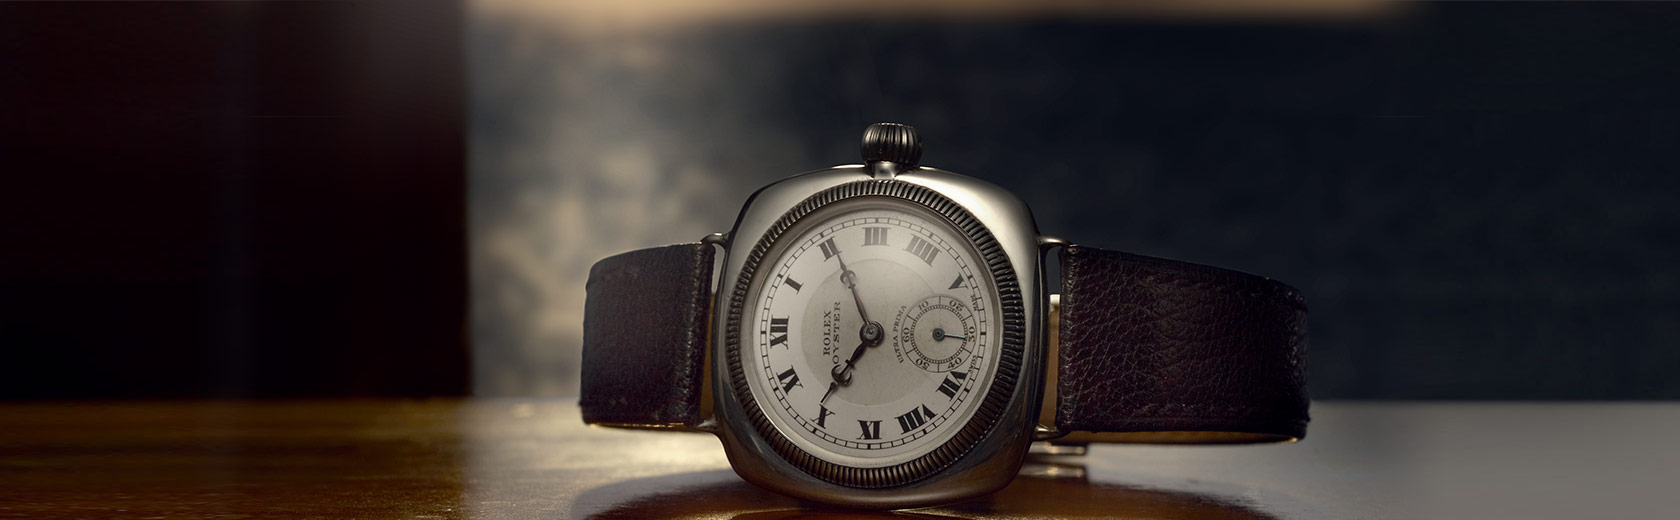 جذاب ترین مدل های ساعت مچی مردانه رولکس 